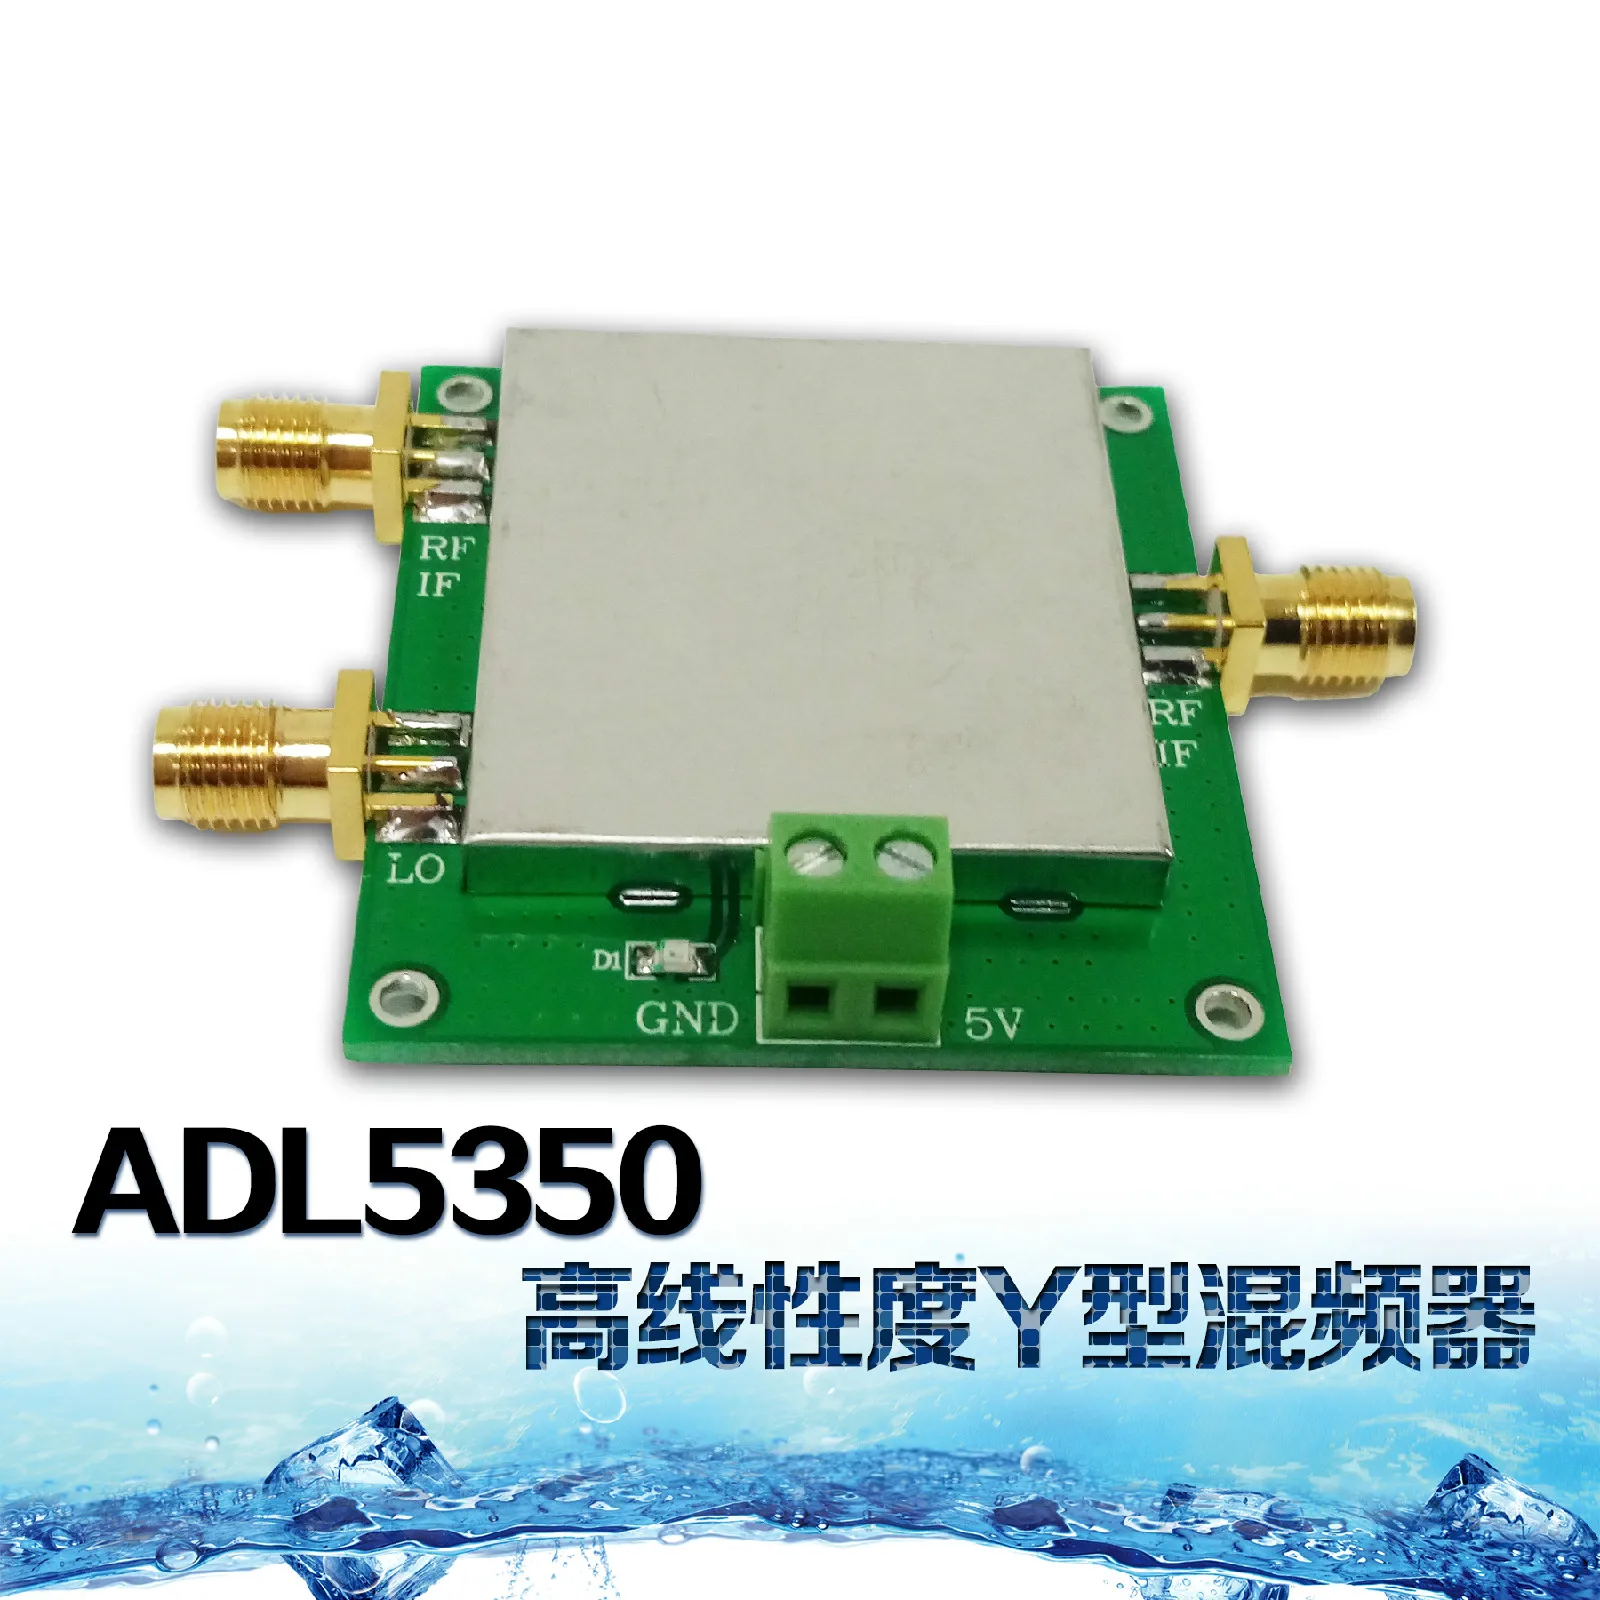 Смеситель ADL5350-EVALZ низкой частоты до 4 ГГц Высокая линейность Y смеситель ADL5350 модуль